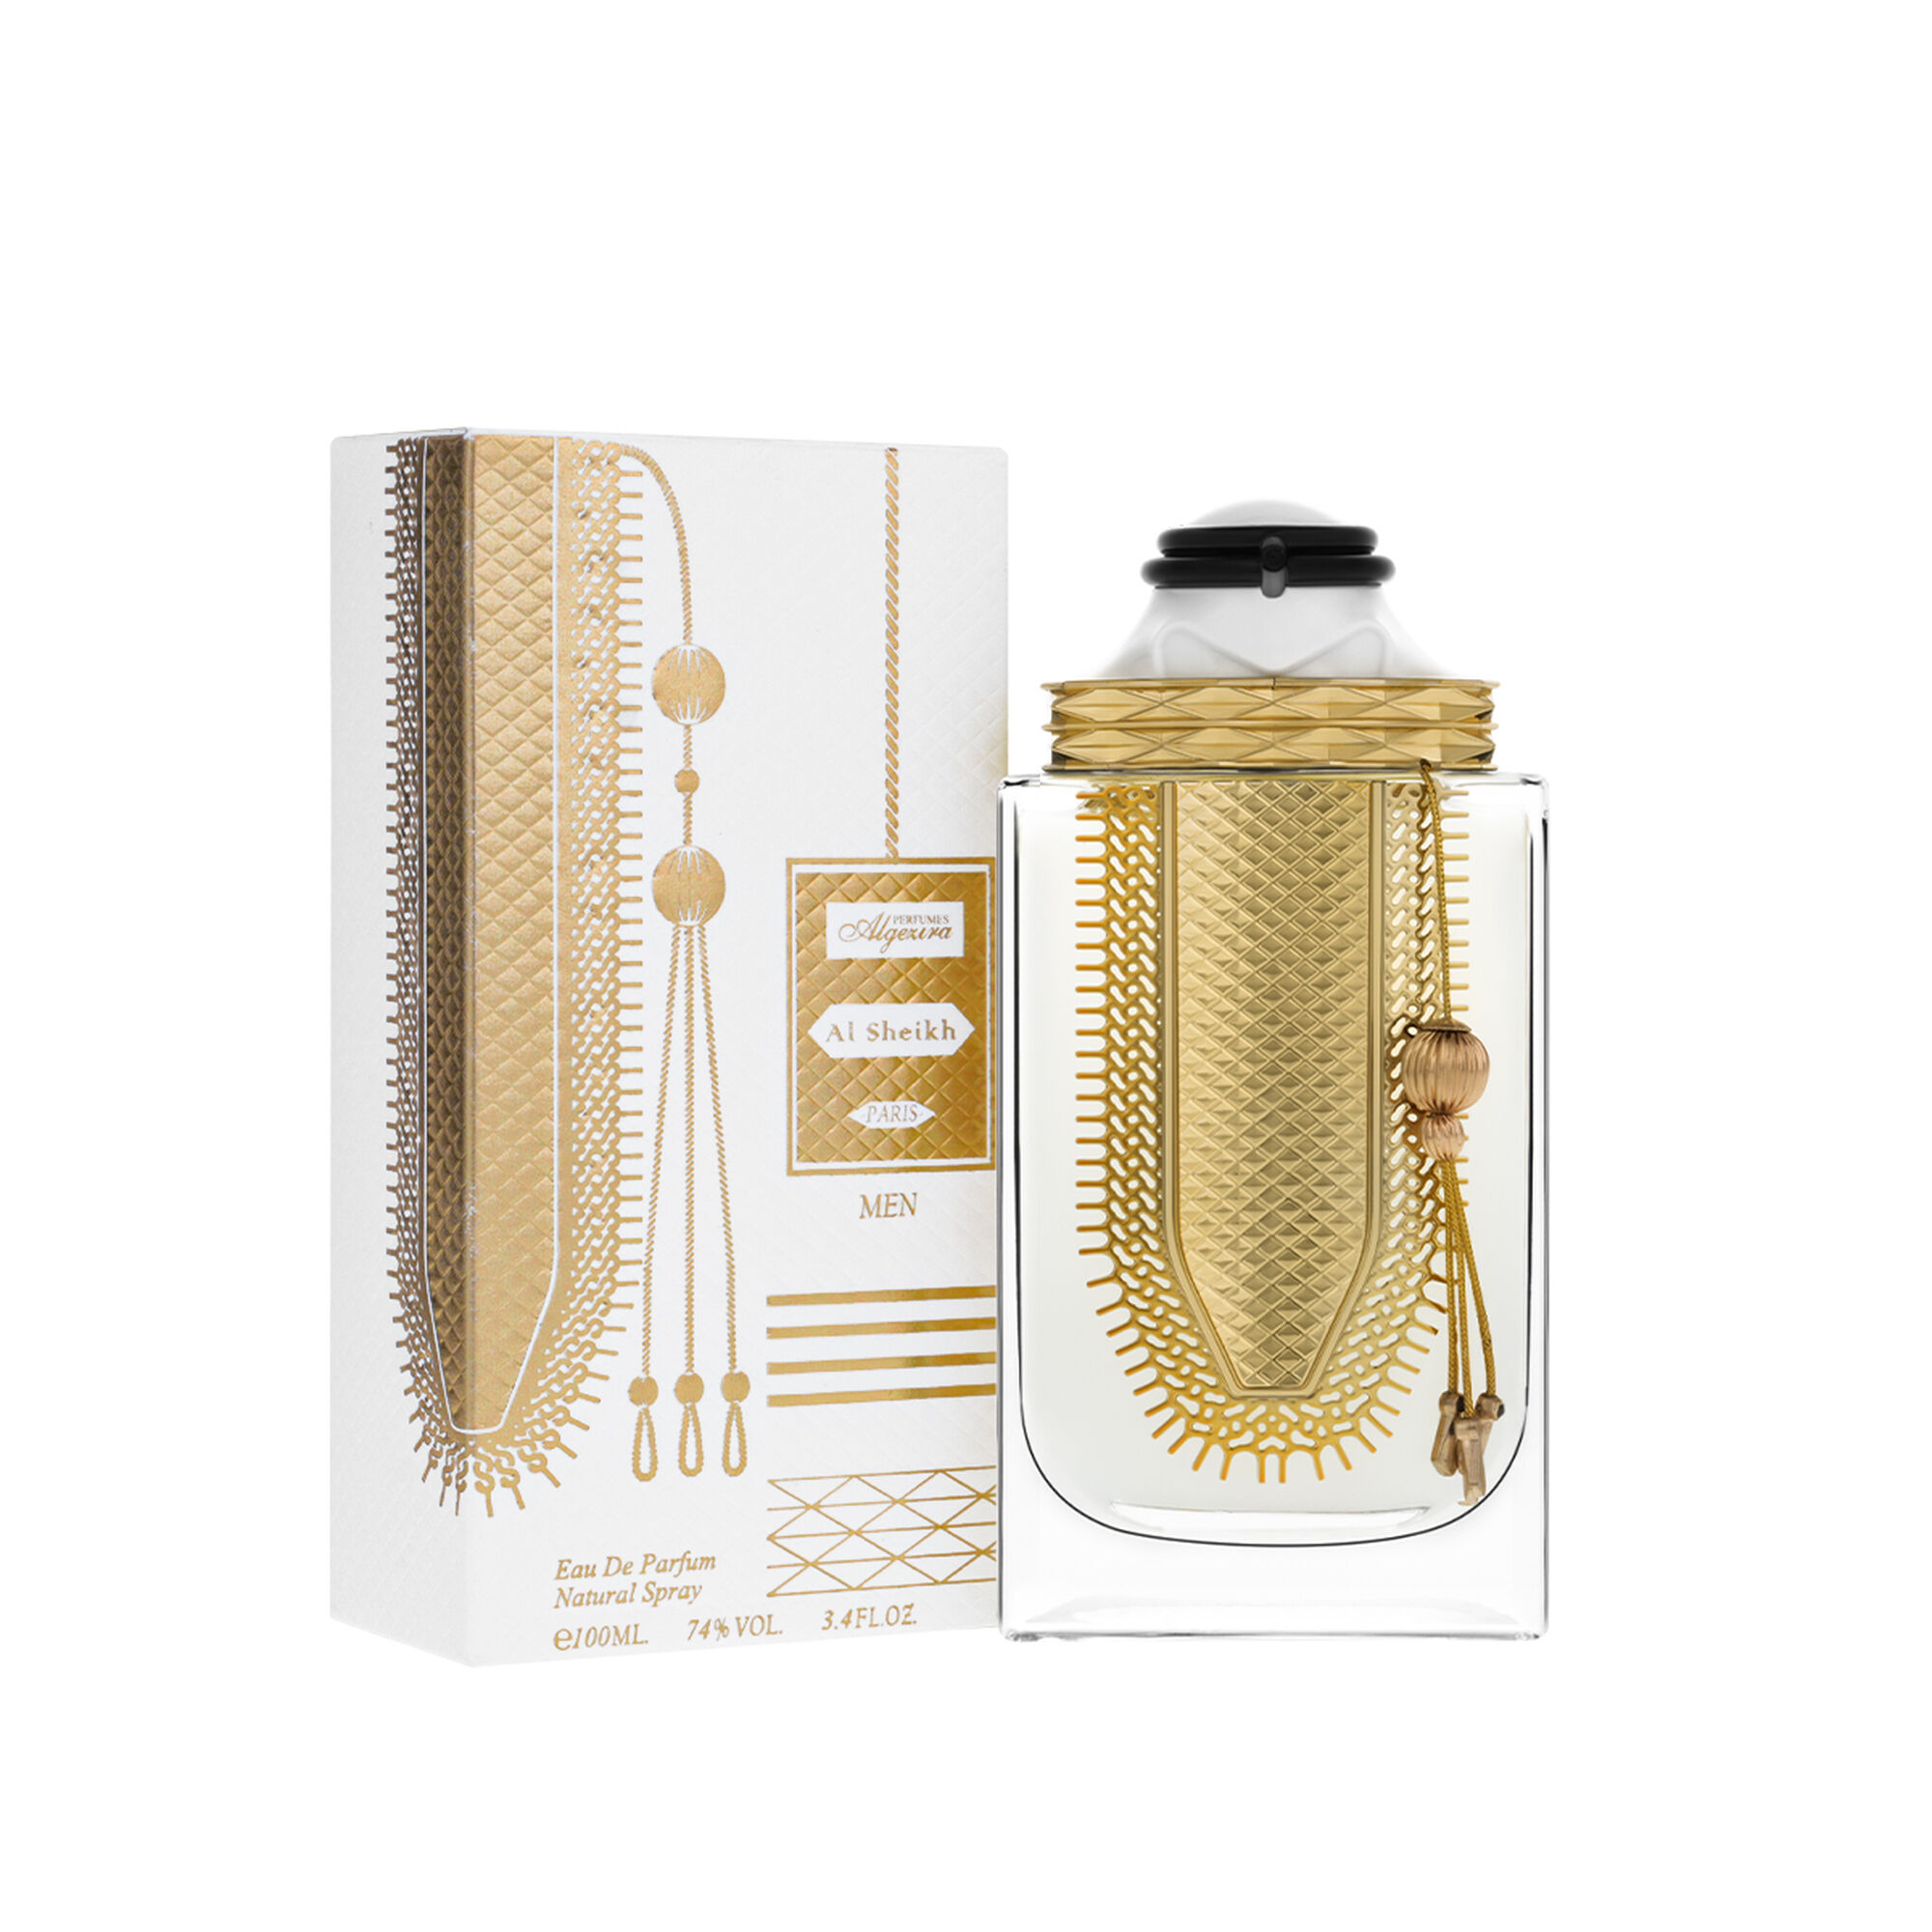 Al-Sheikh White perfume for men 100 ml